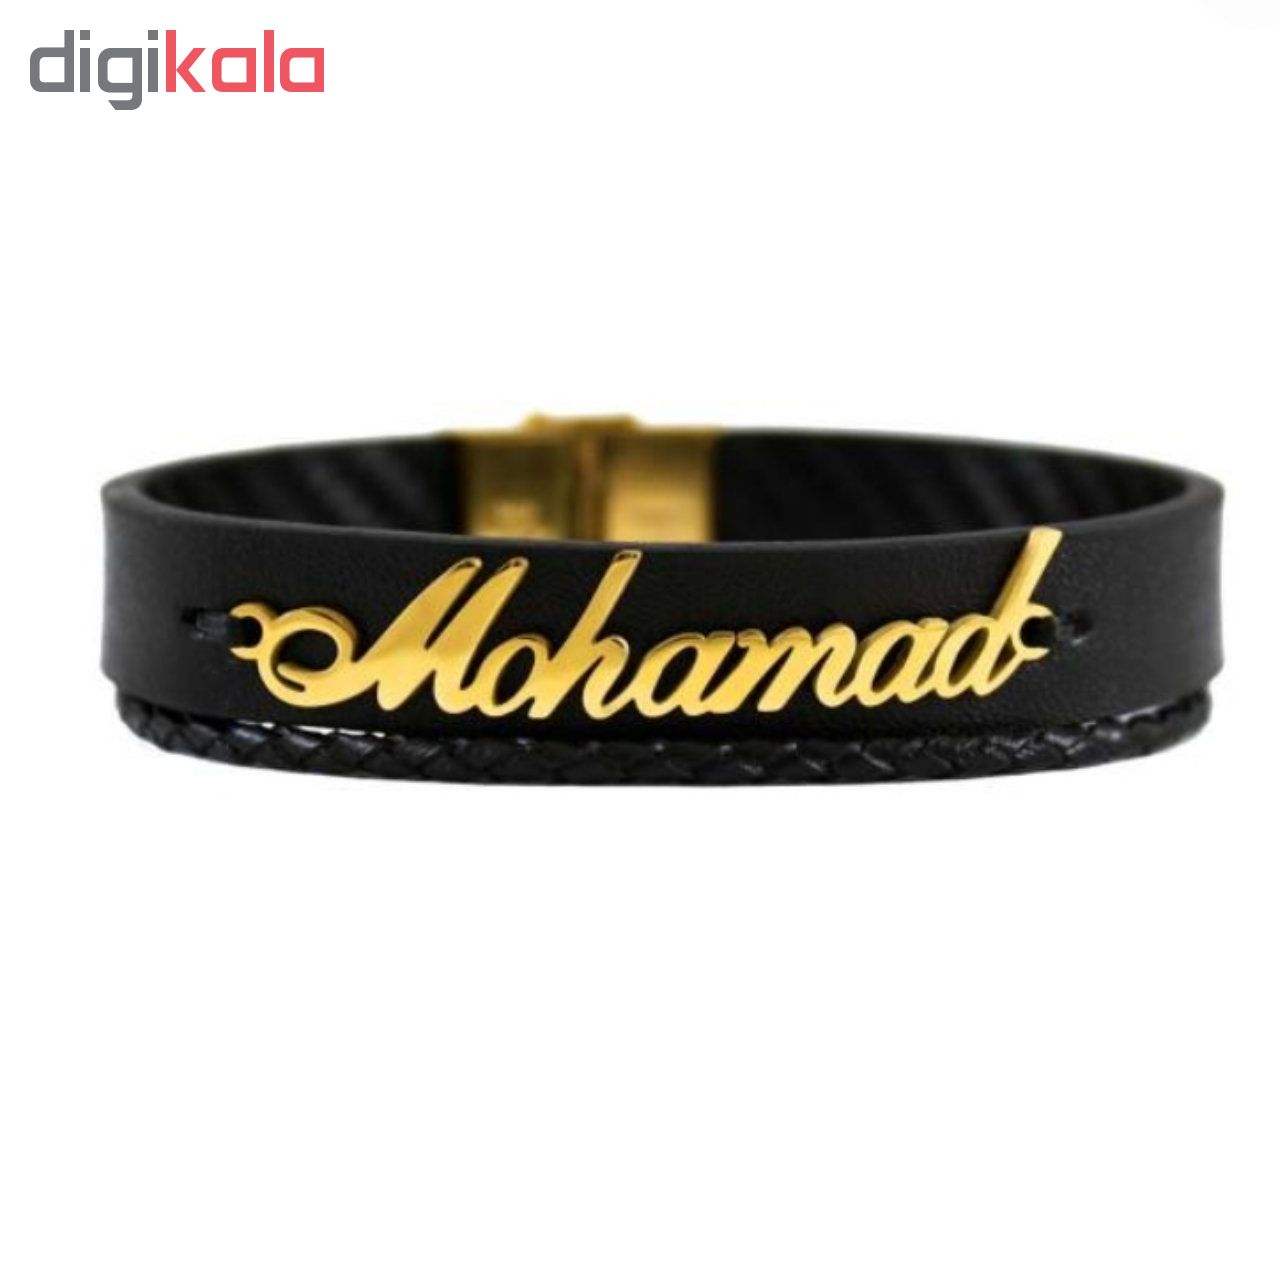 لیست قیمت 30 مدل دستبند نقره مردانه شیک و زیبا + لینک خرید